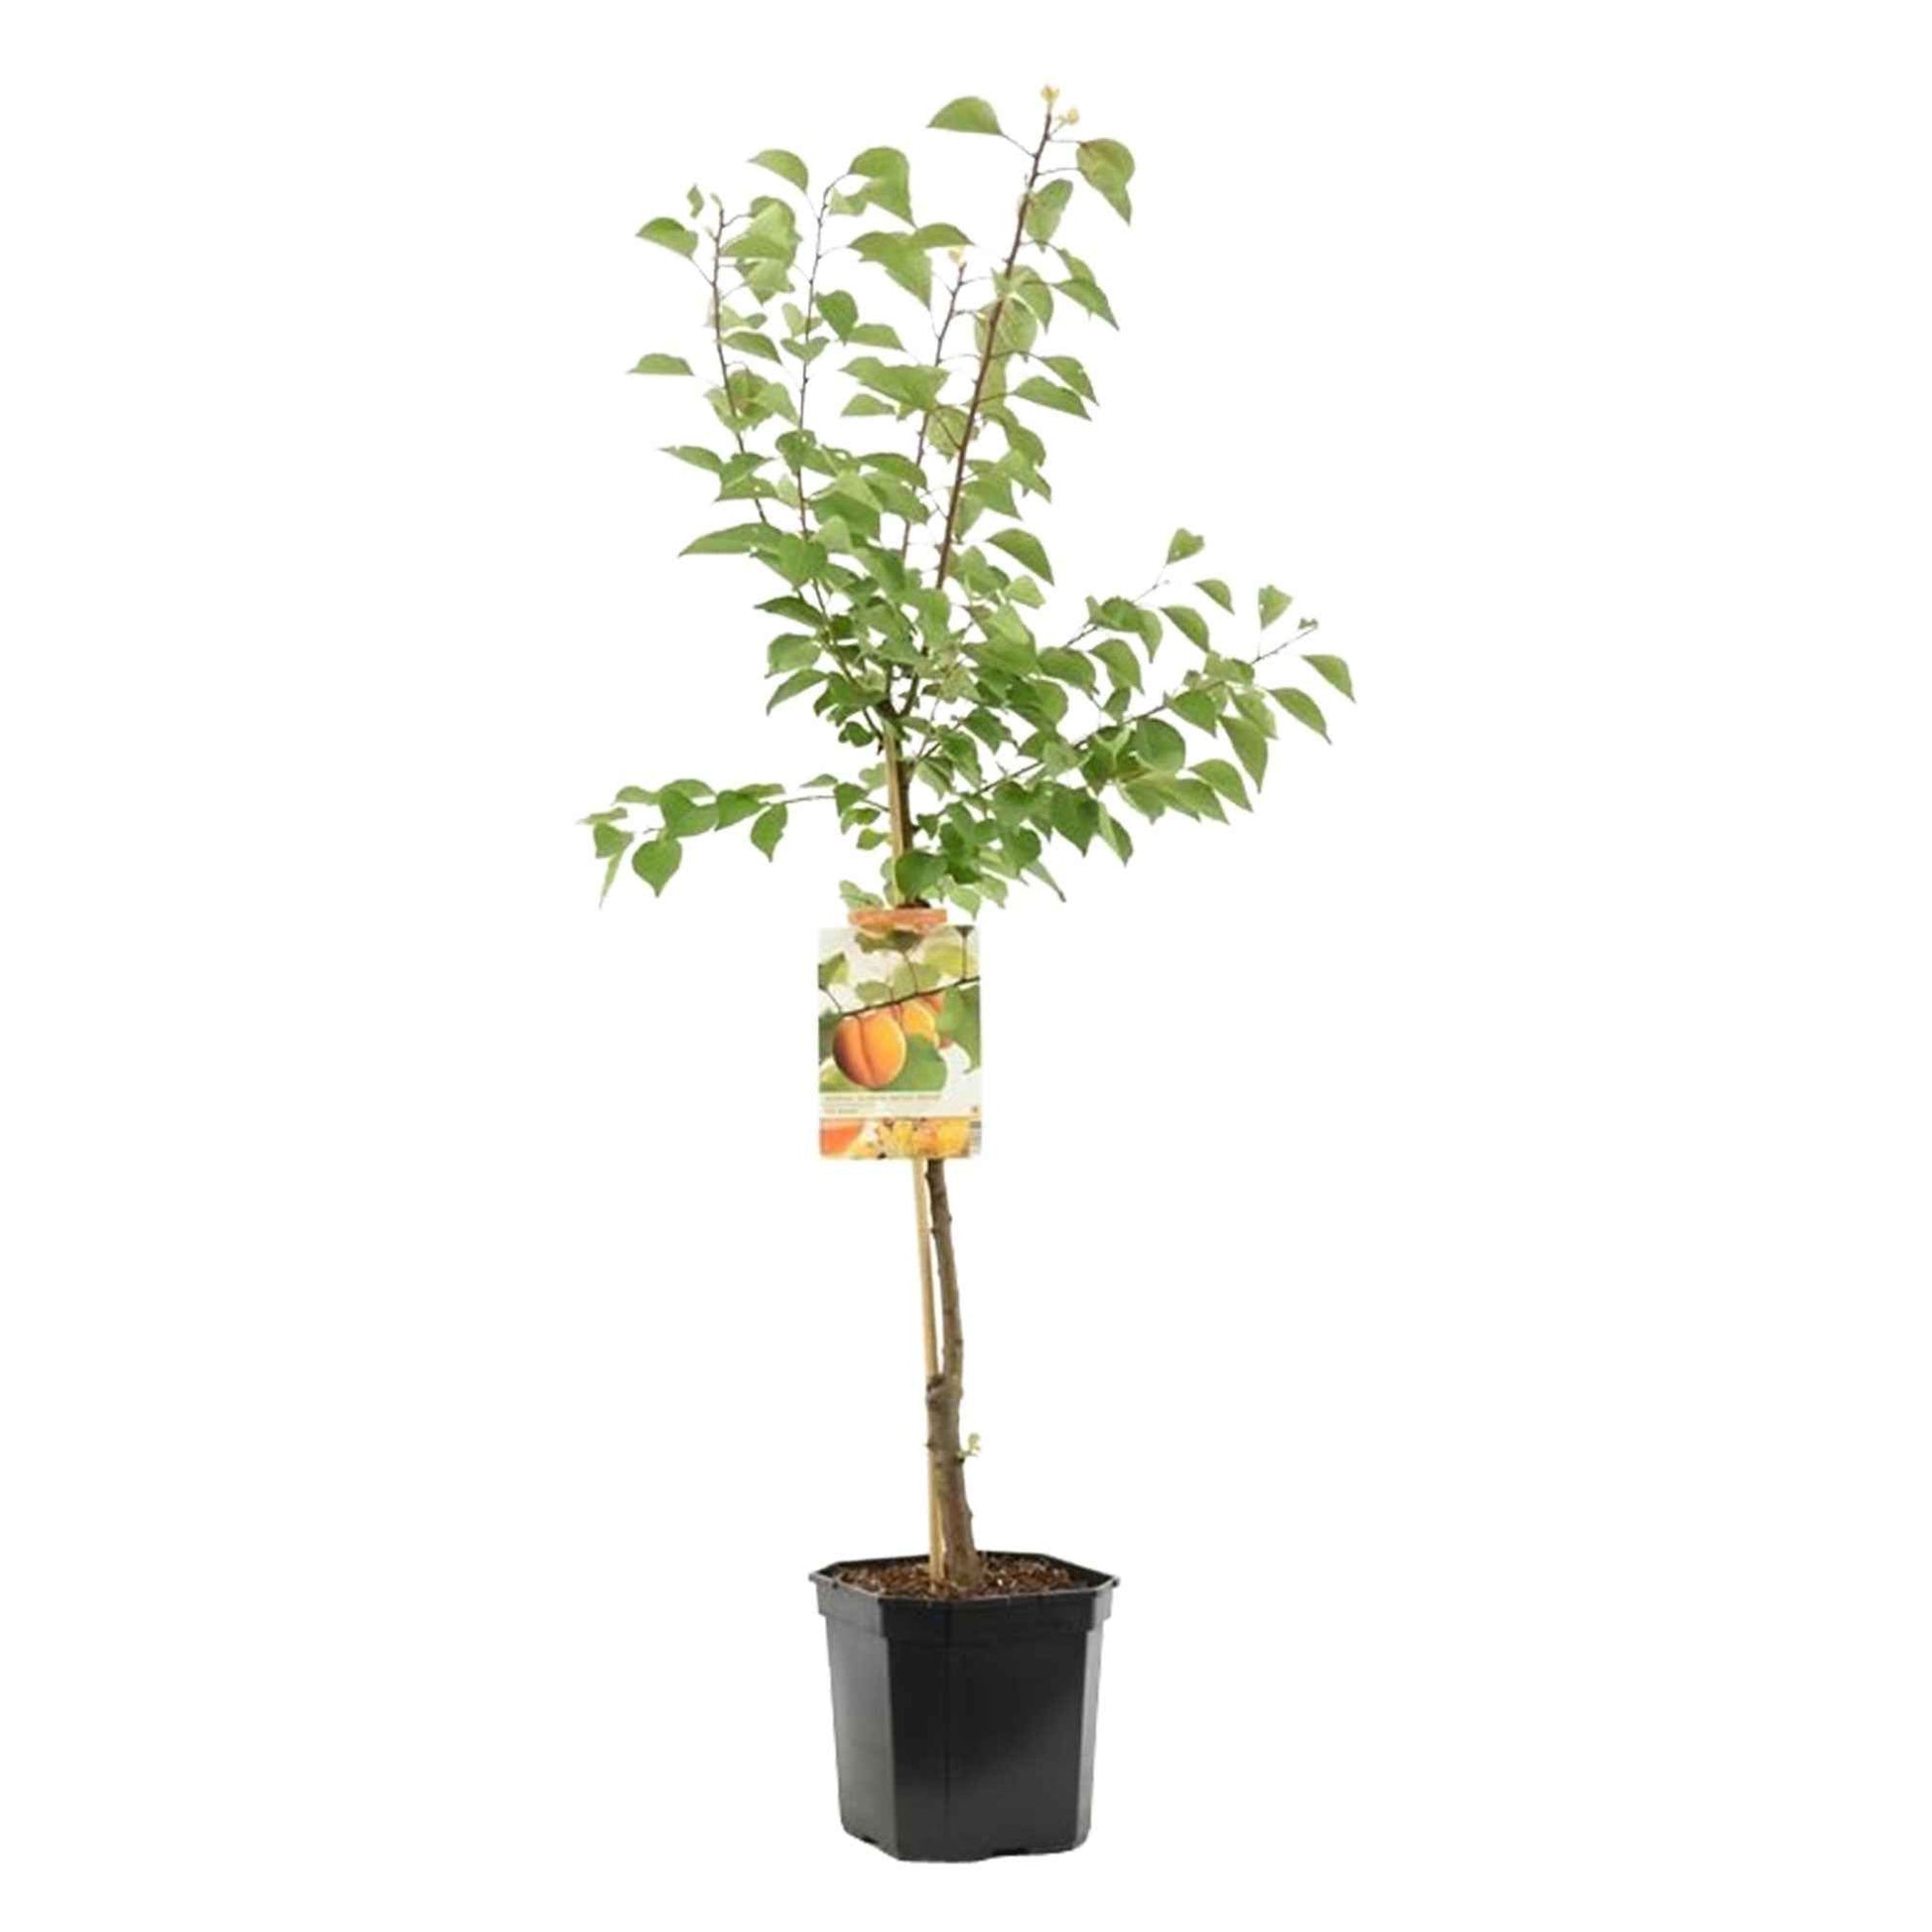 Aprikosenbaum - Winterhart - Gartenpflanzen